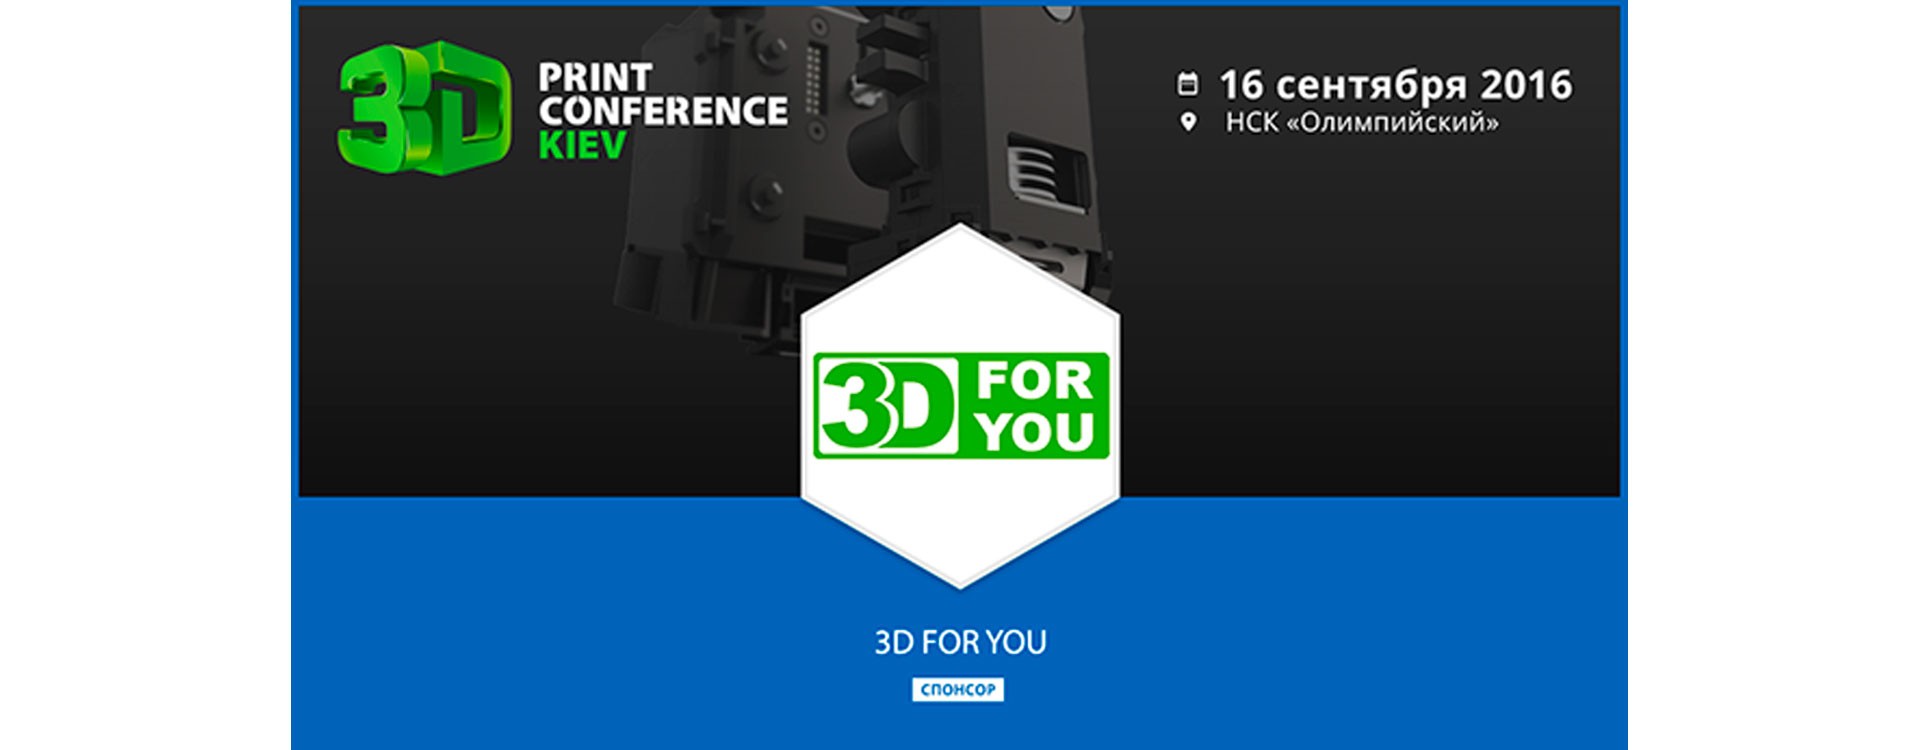 Команда 3D4U приняла участие в выставке 3D Print Conference Kiev